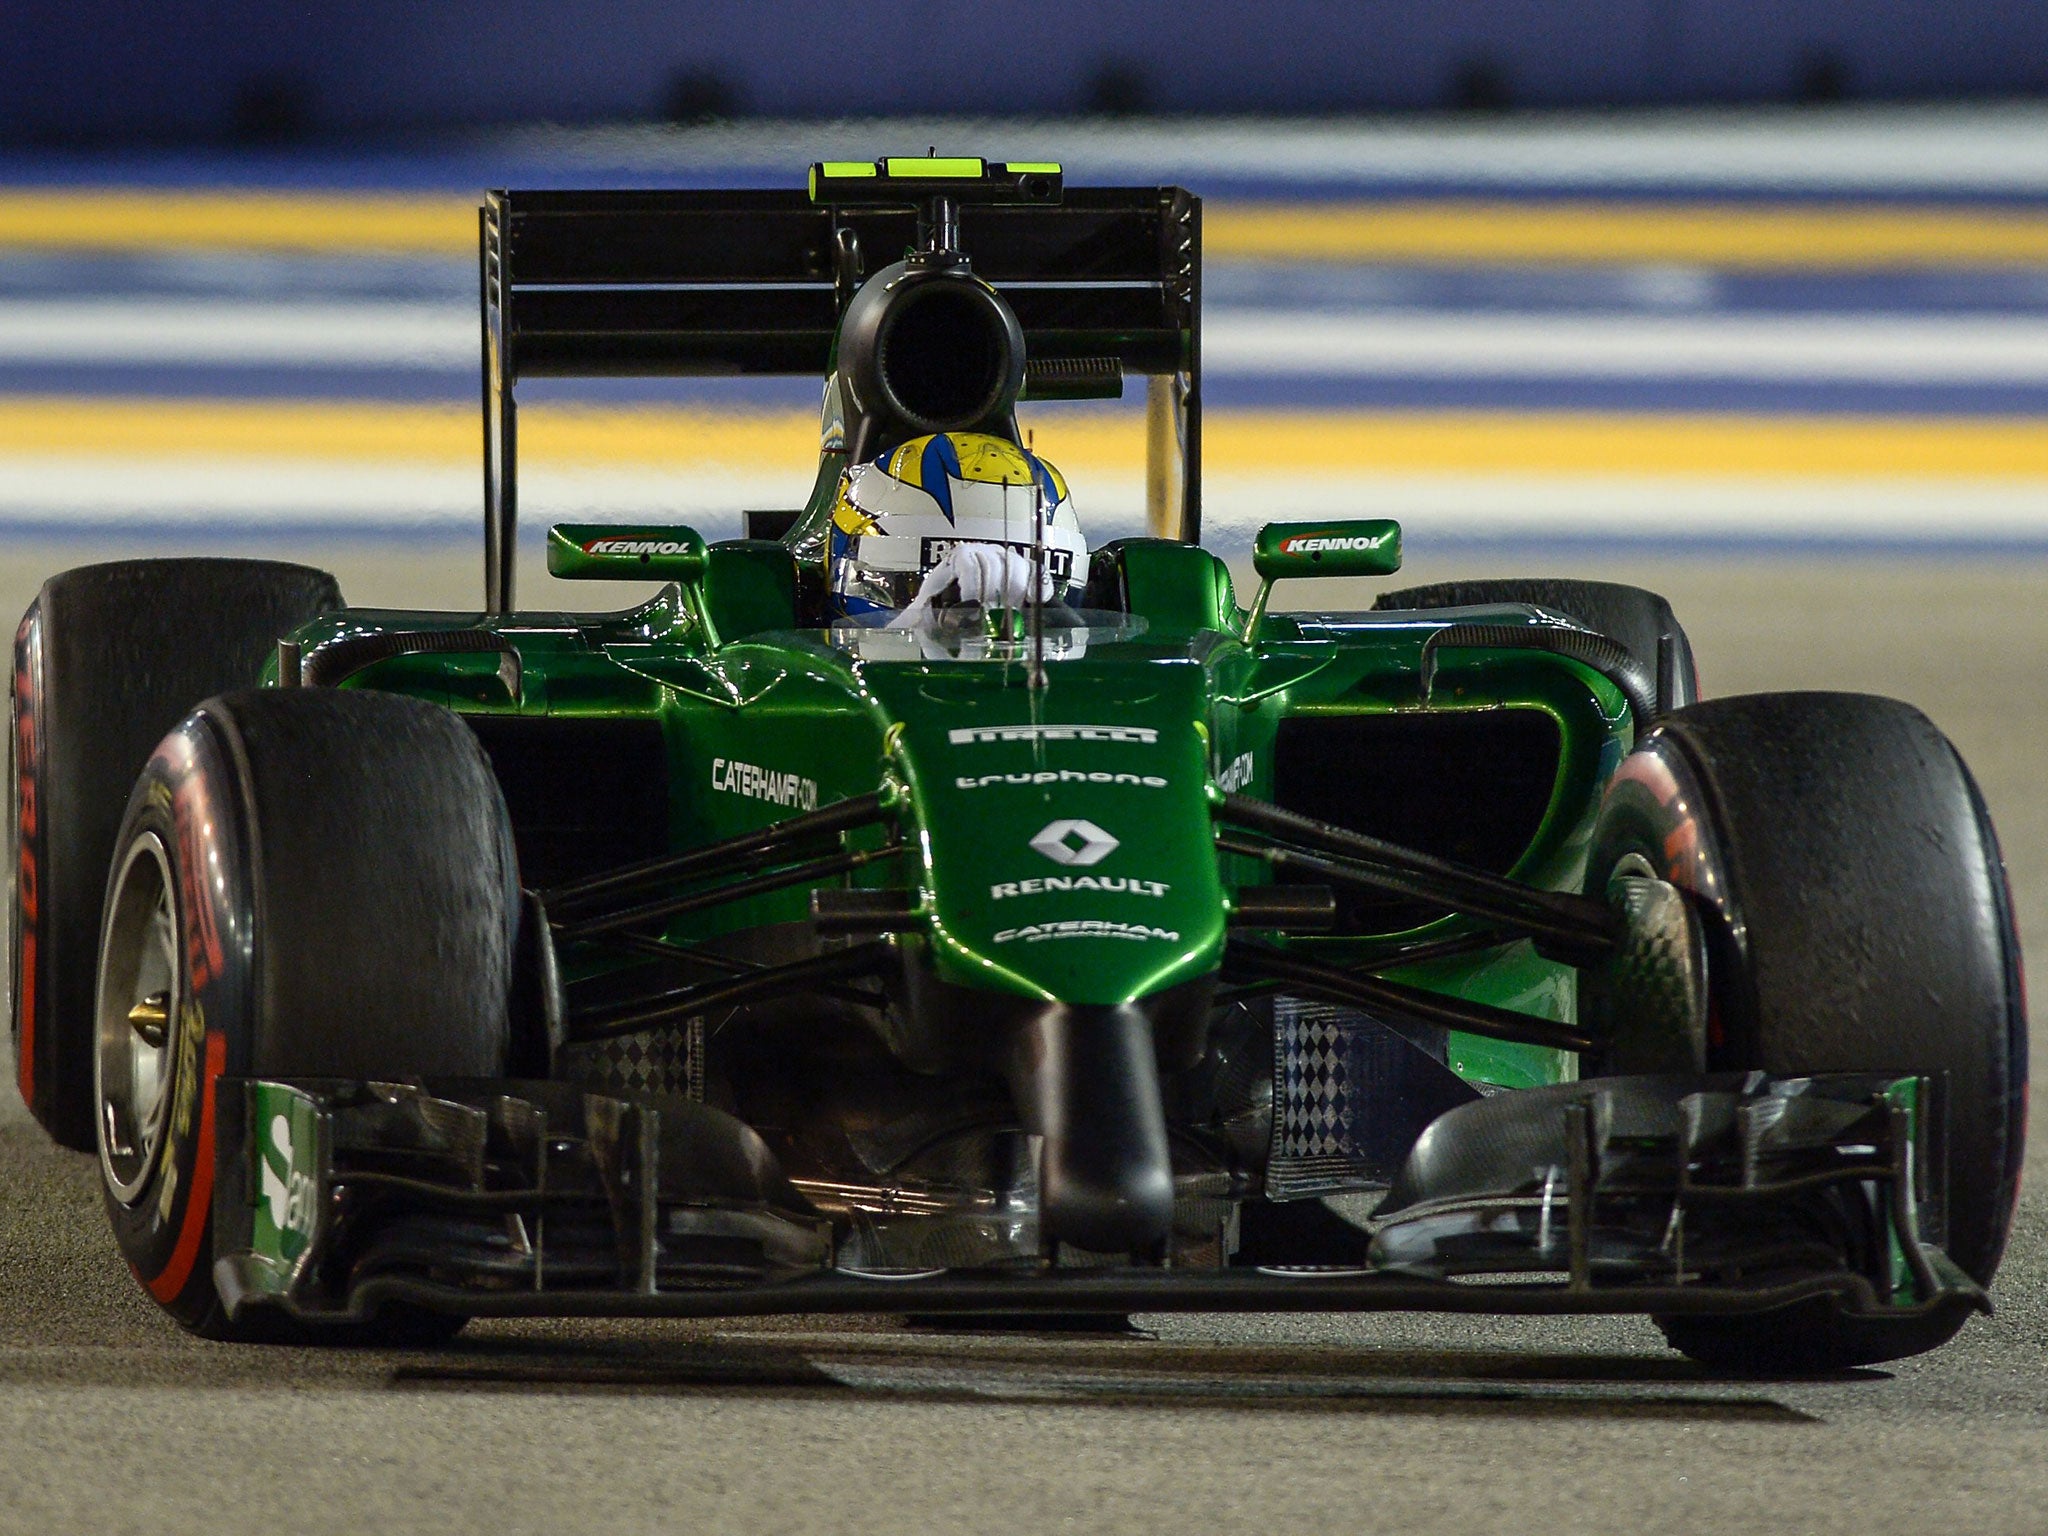 Caterham driver Marcus Ericsson in action at Singapore